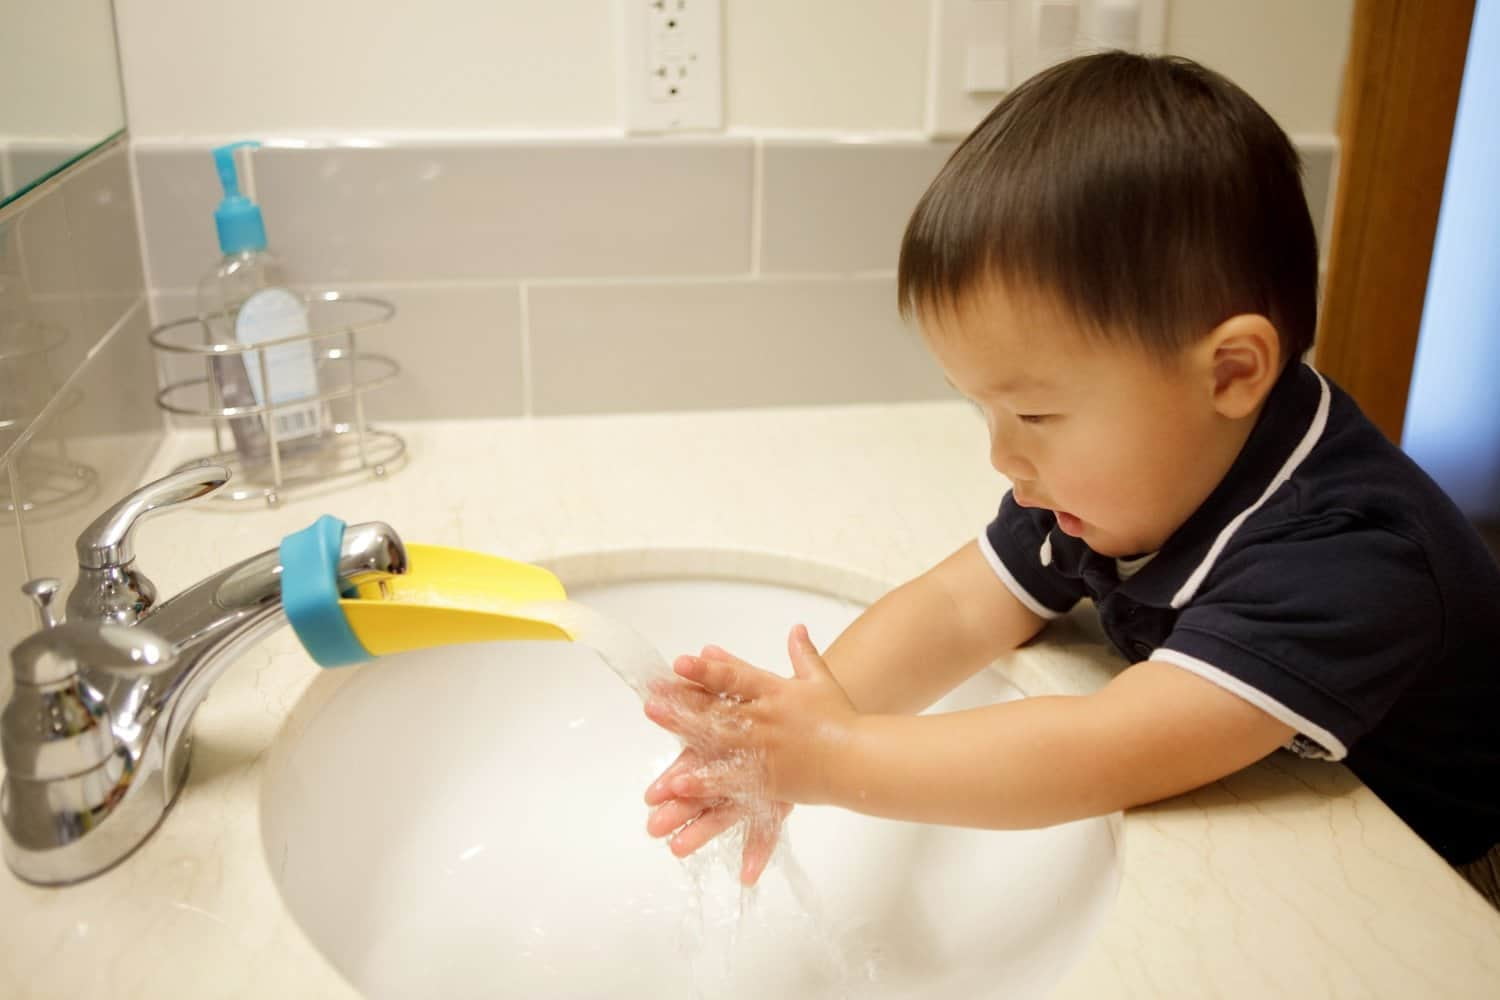 这款水龙头辅助洗手器装在水龙头上即可令水流靠近小朋友